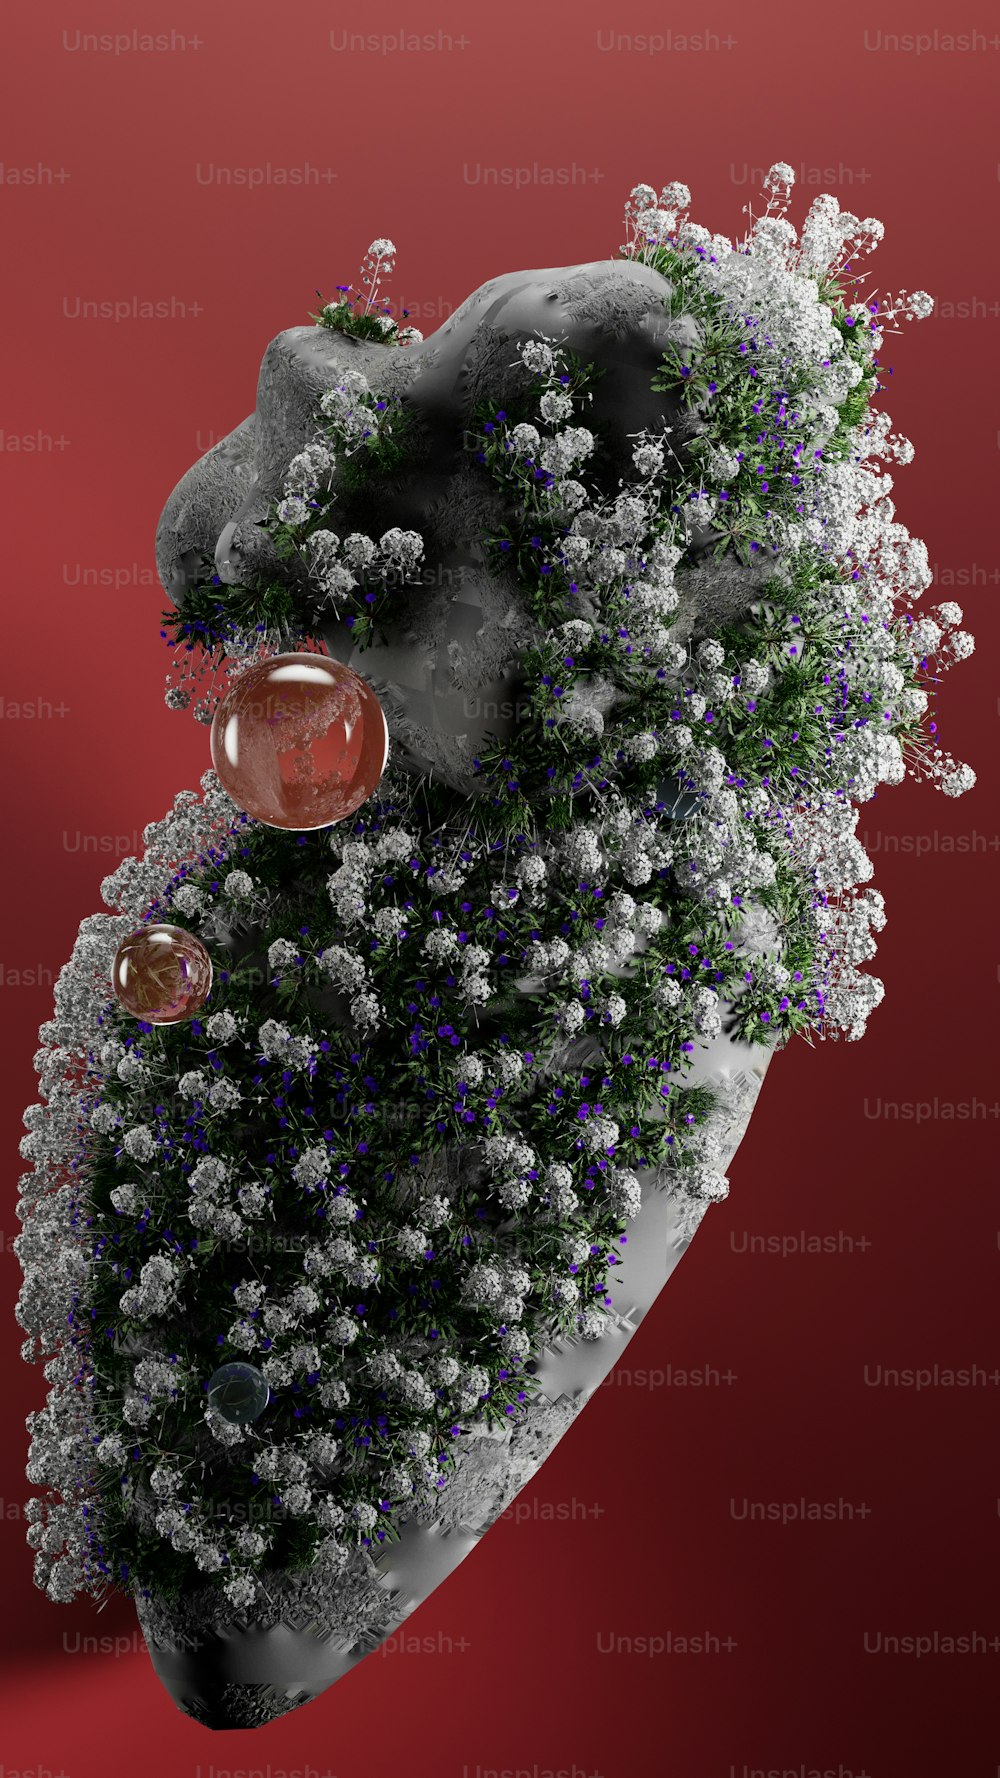 Una imagen generada por computadora de una planta en forma de corazón